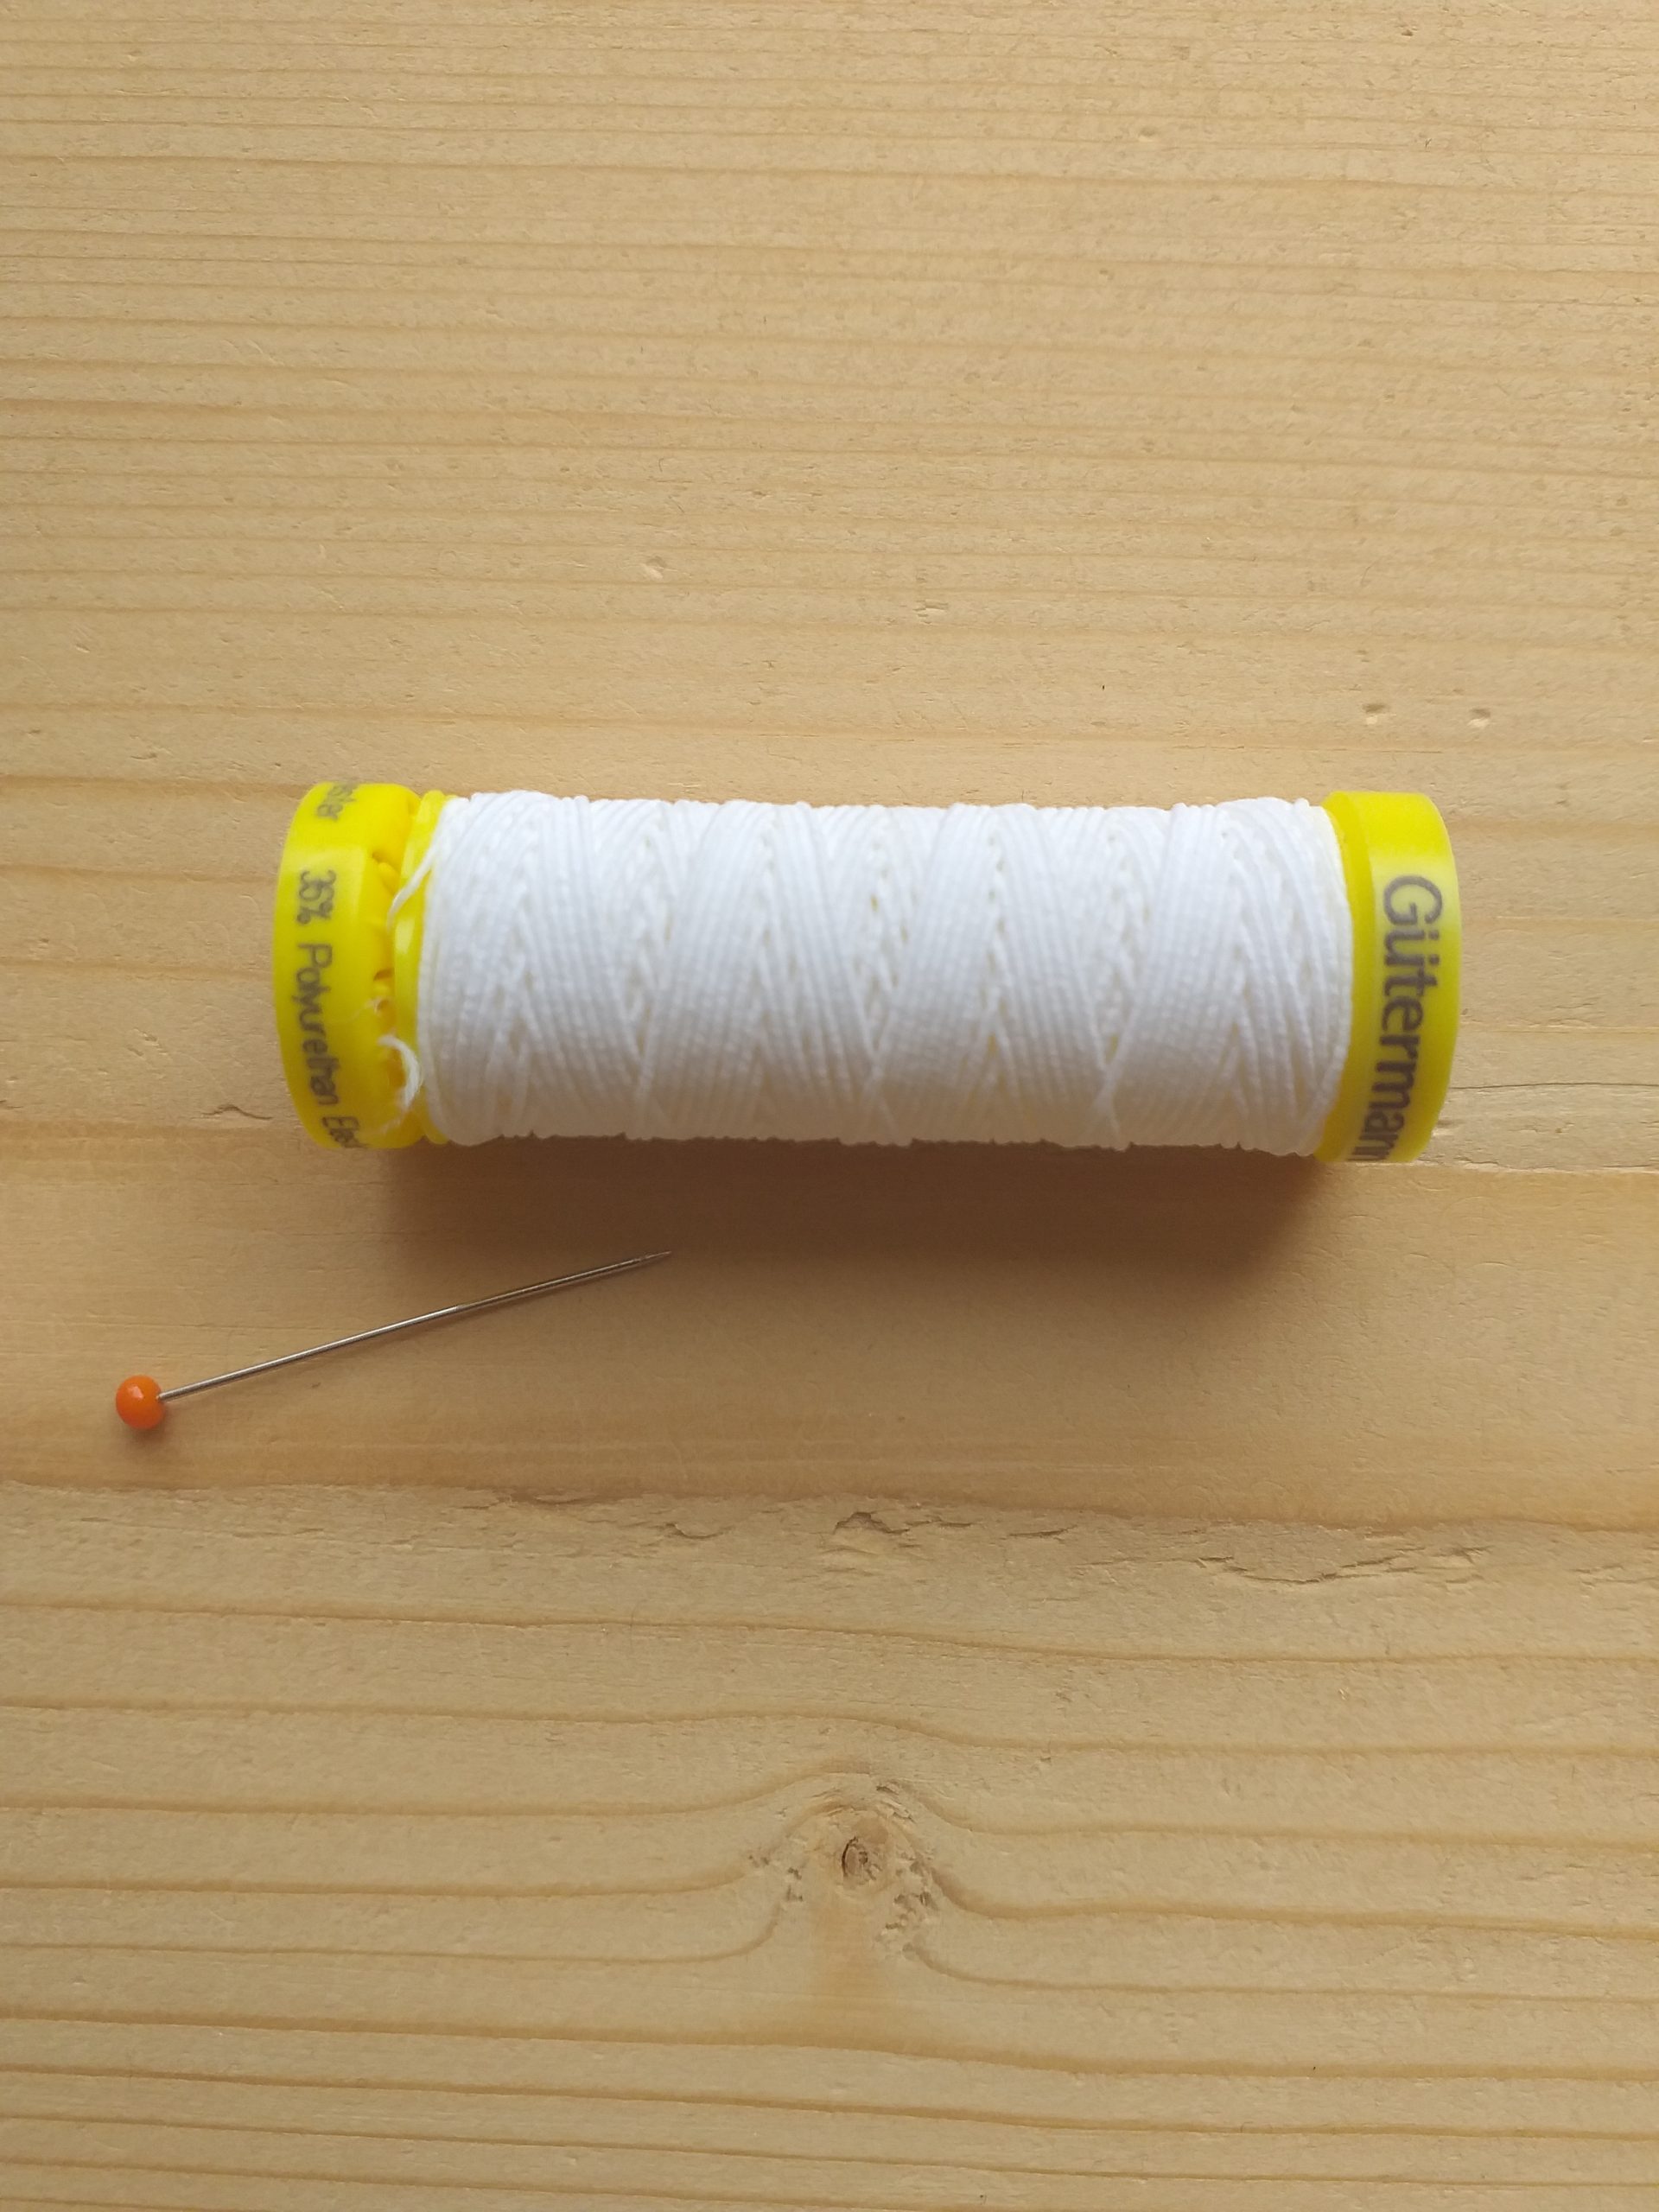 Bobine 400m fil élastique latex guidé coton